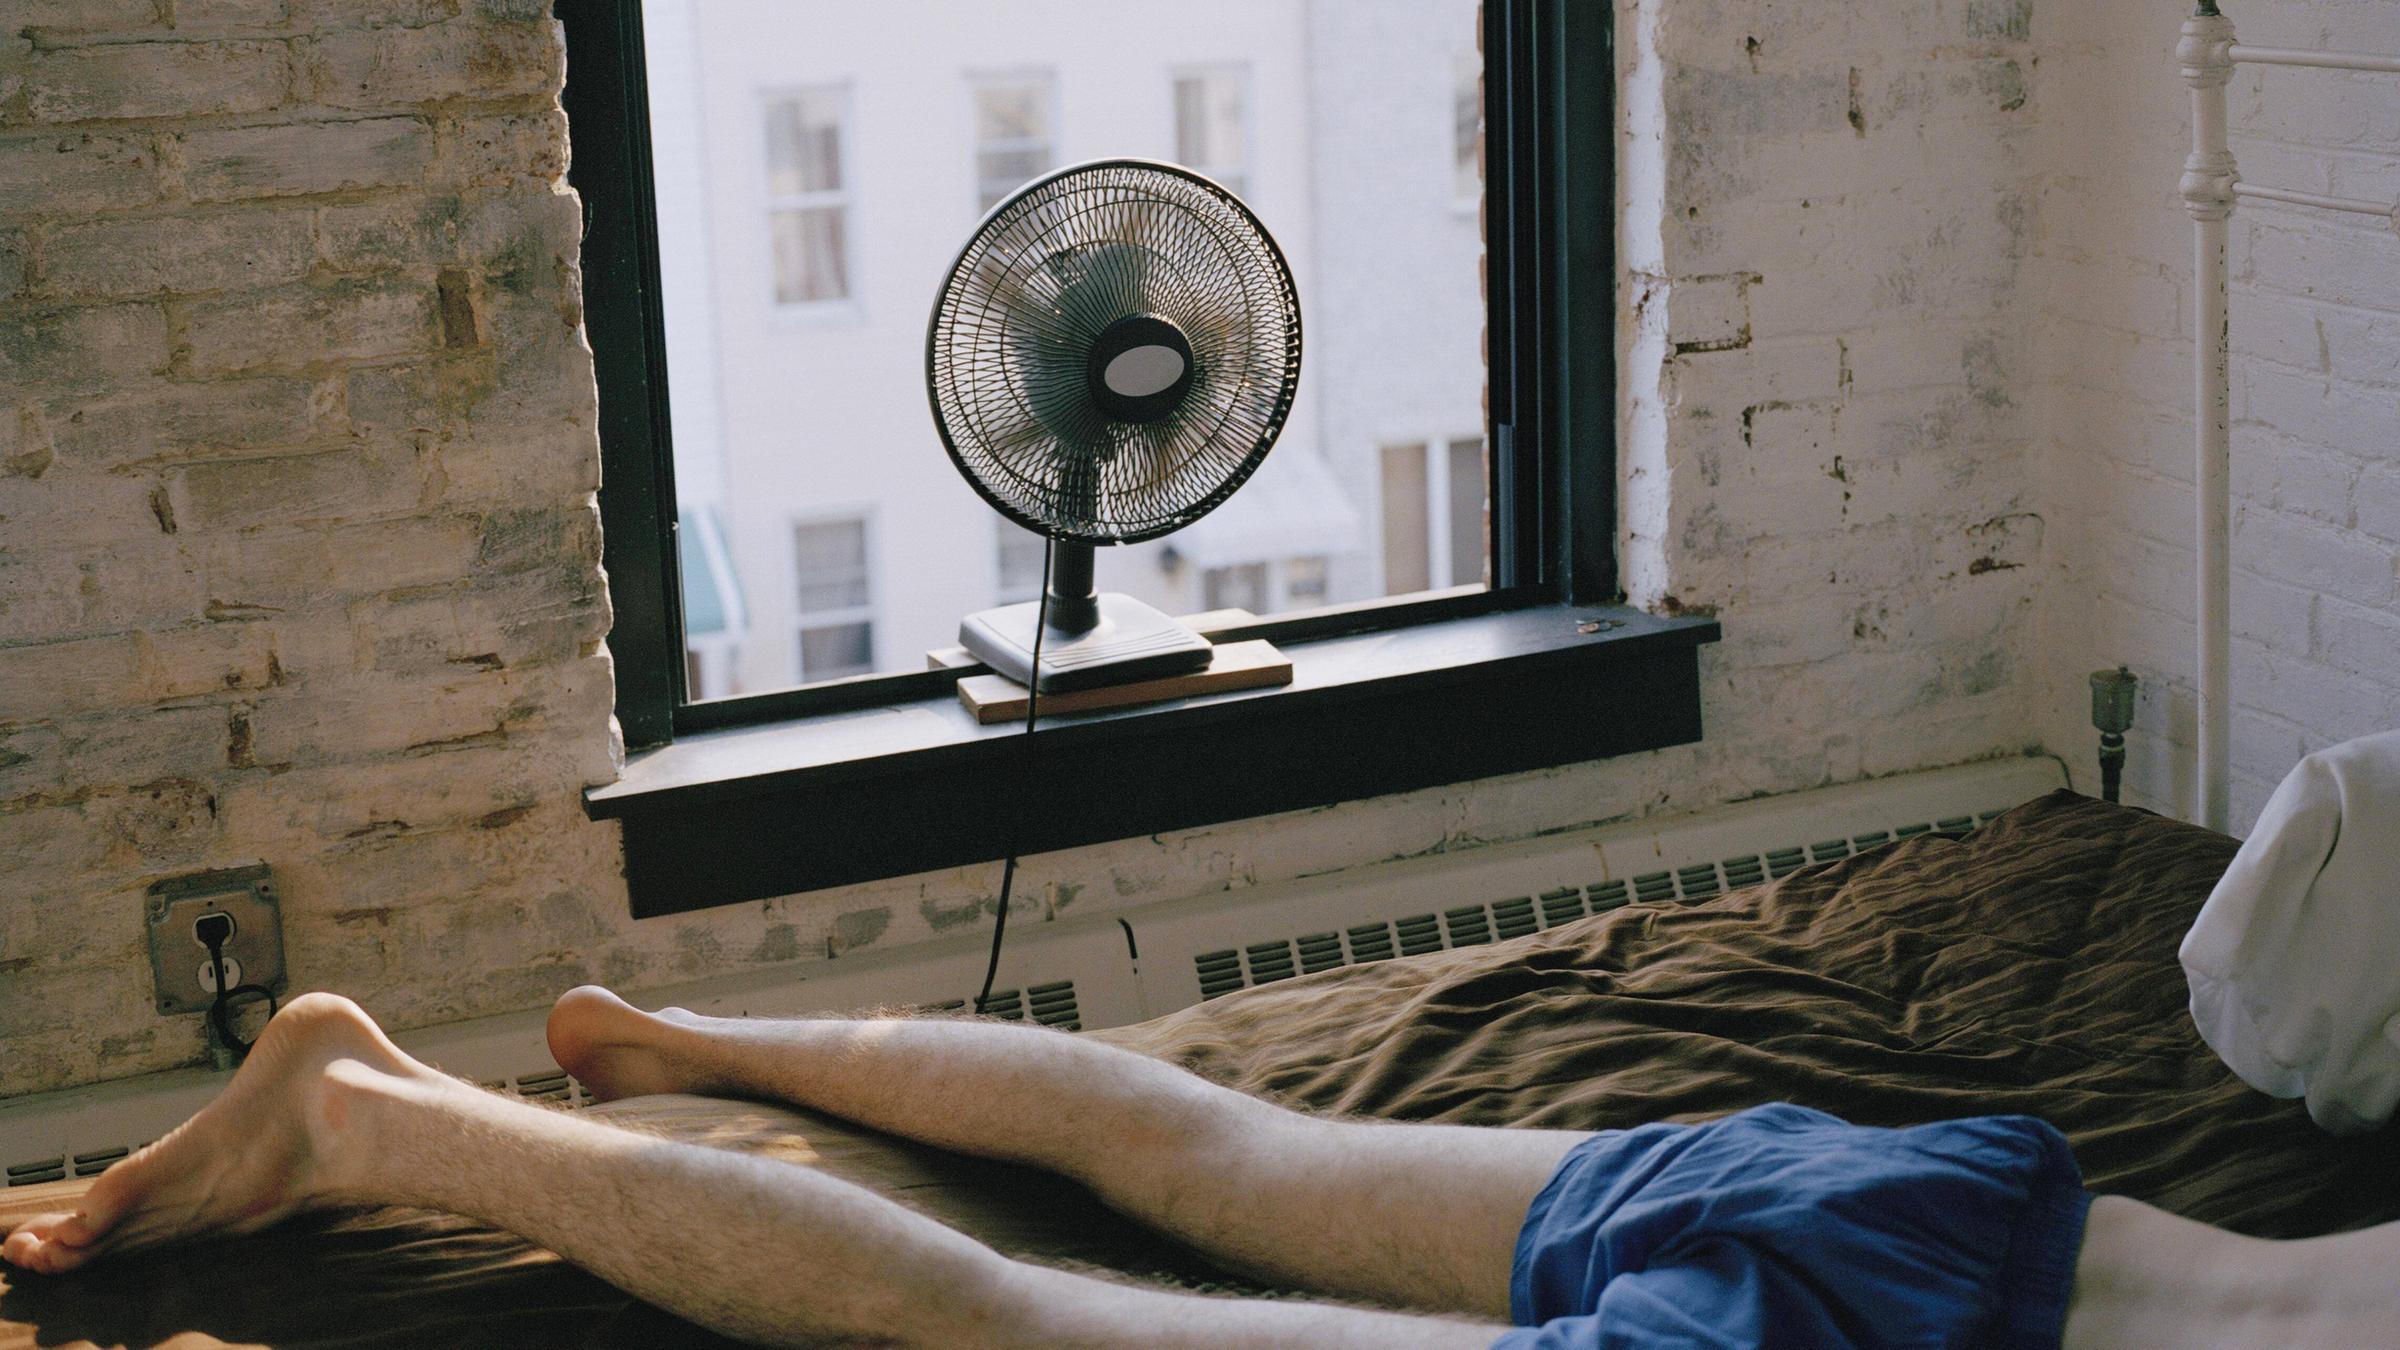 Ein Mann liegt in Unterhose auf einem Bett in einem Zimmer in New York City. Ein Ventilator steht auf dem Fensterbrett.